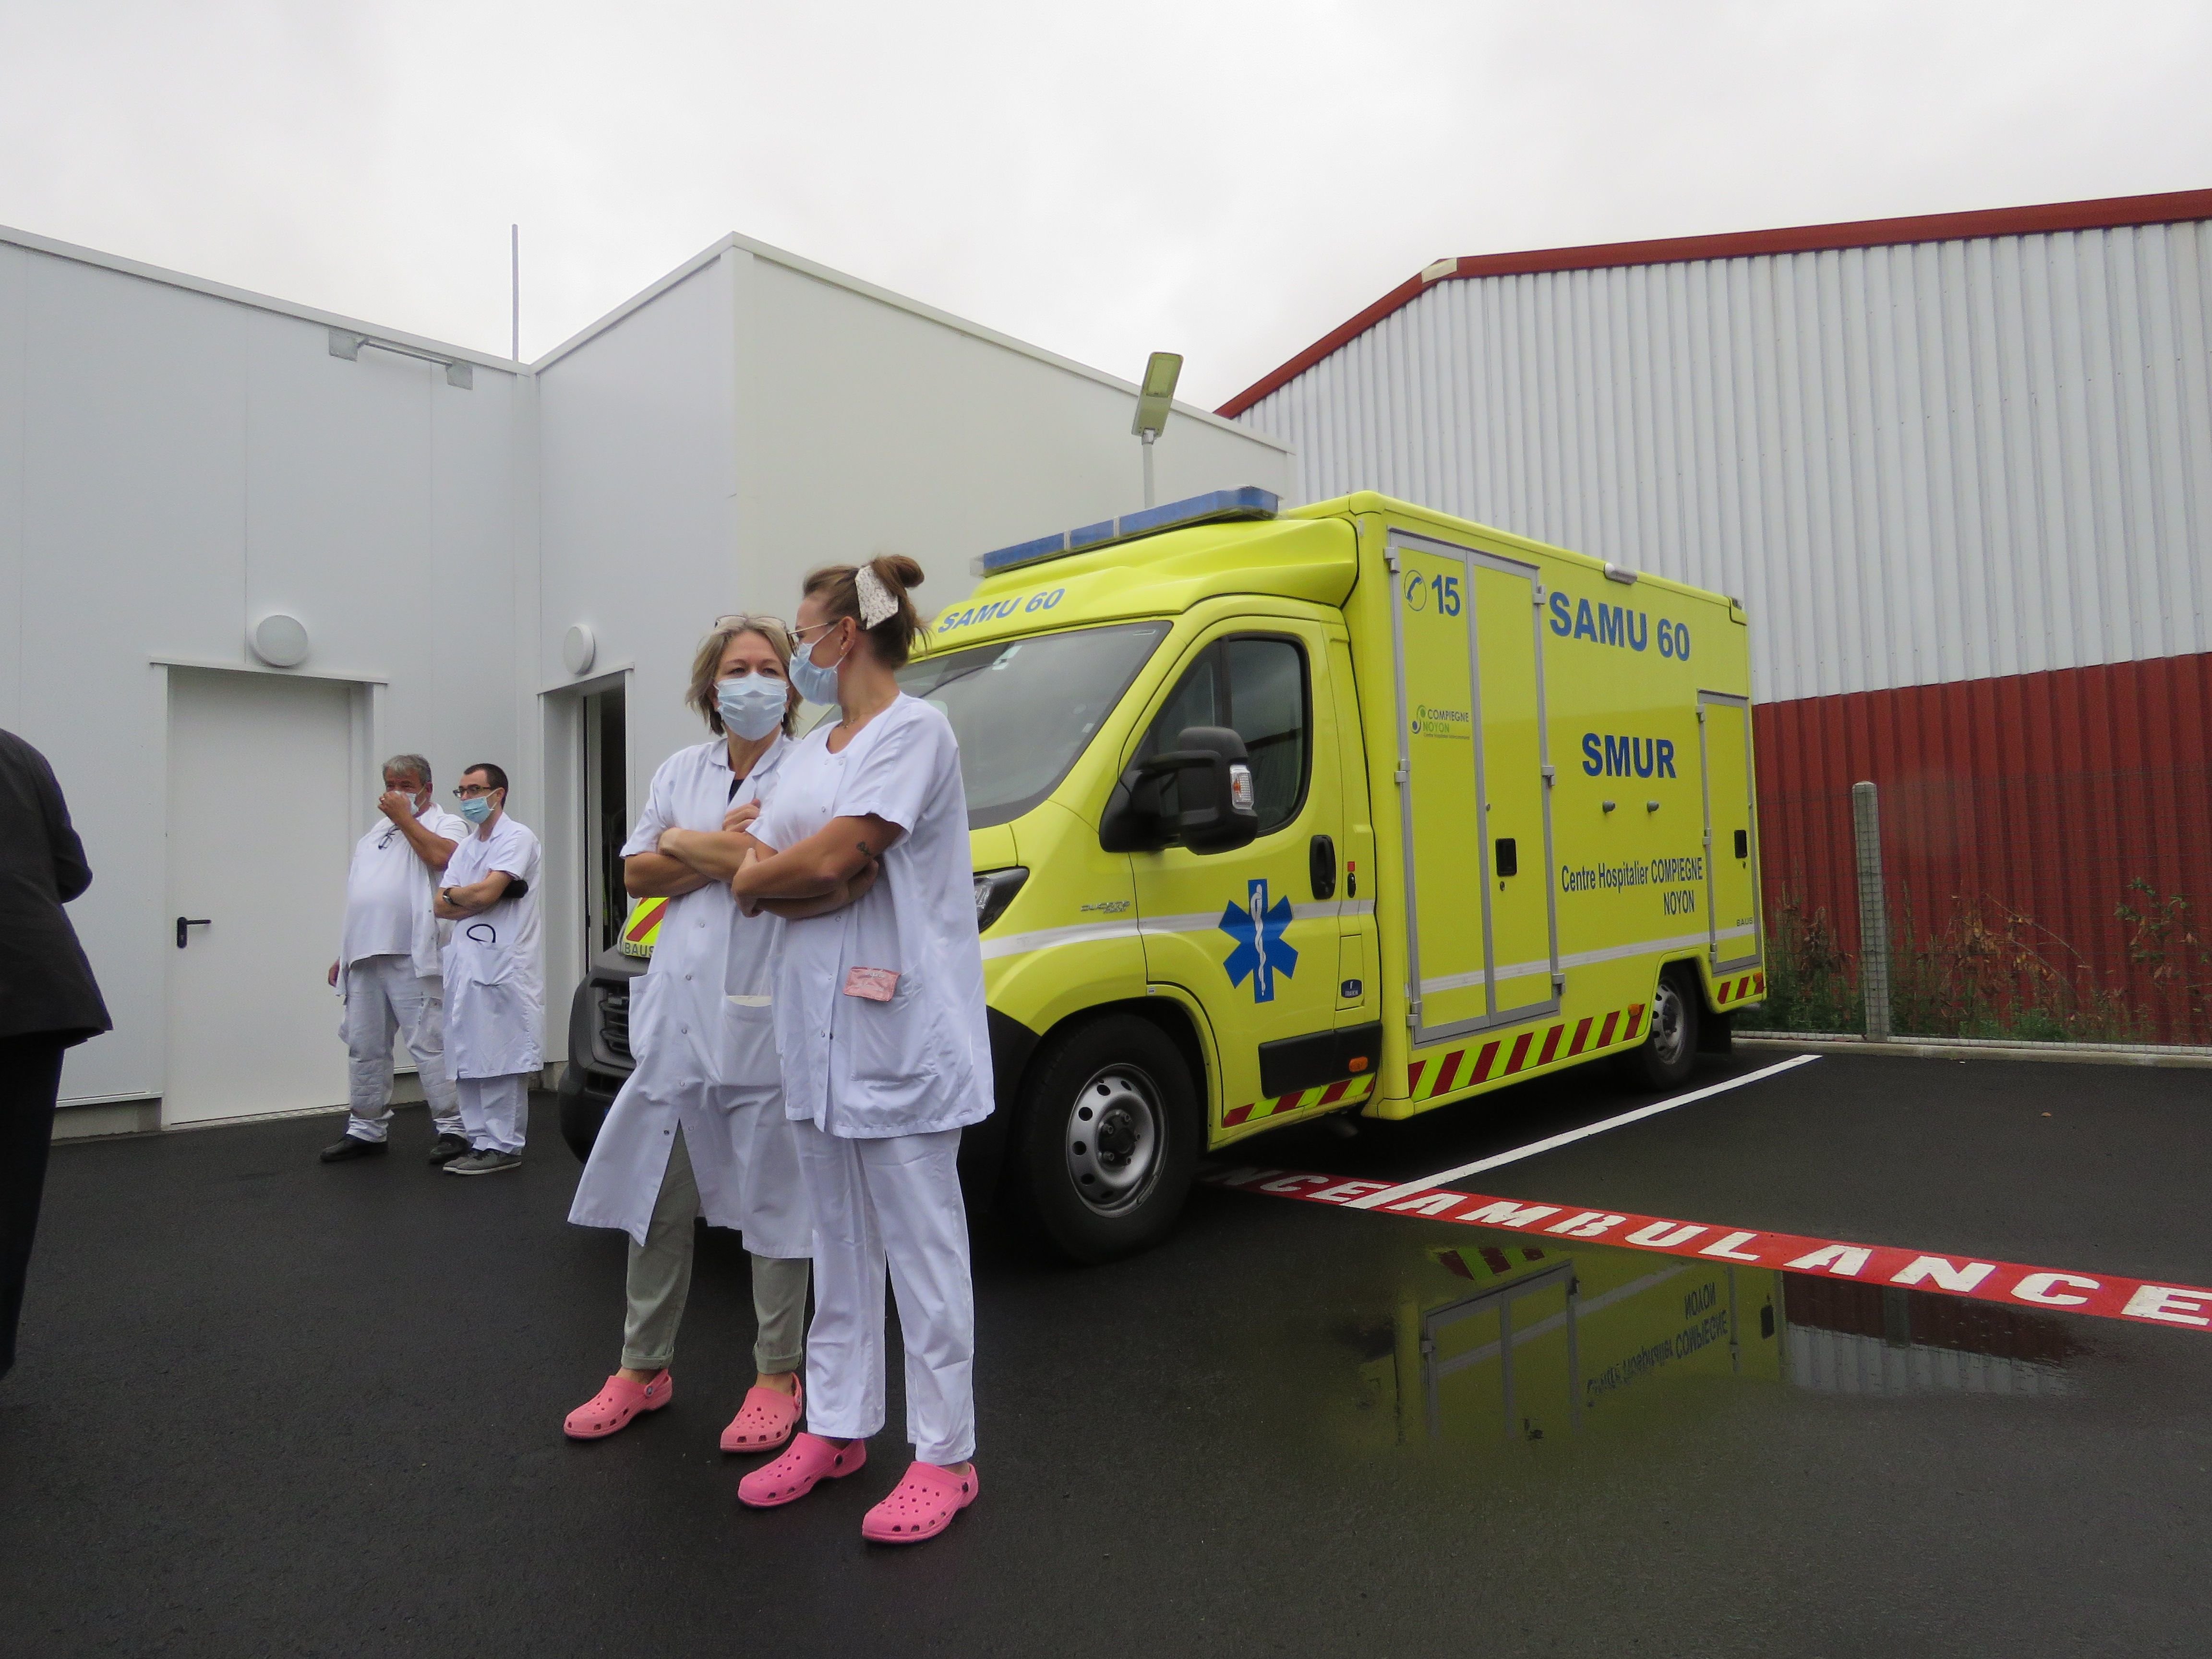 Faute de personnel, le centre hospitalier souhaite rapatrier les médecins des Smur de Noyon à Compiègne et privilégier une équipe formée d'un ambulancier et d'une infirmière. LP/Stéphanie Forestier